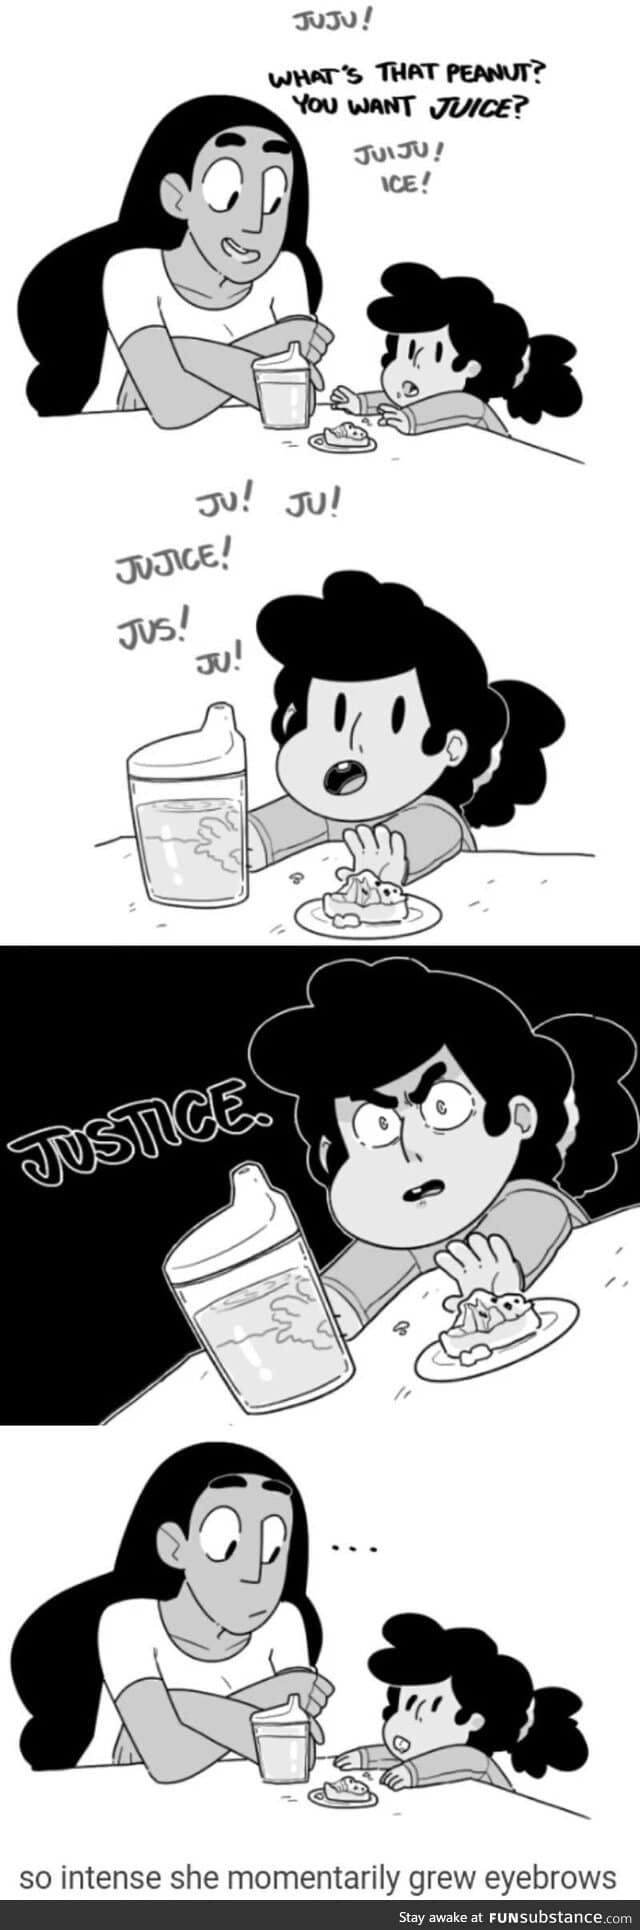 Ju-ju-JUSTICE!